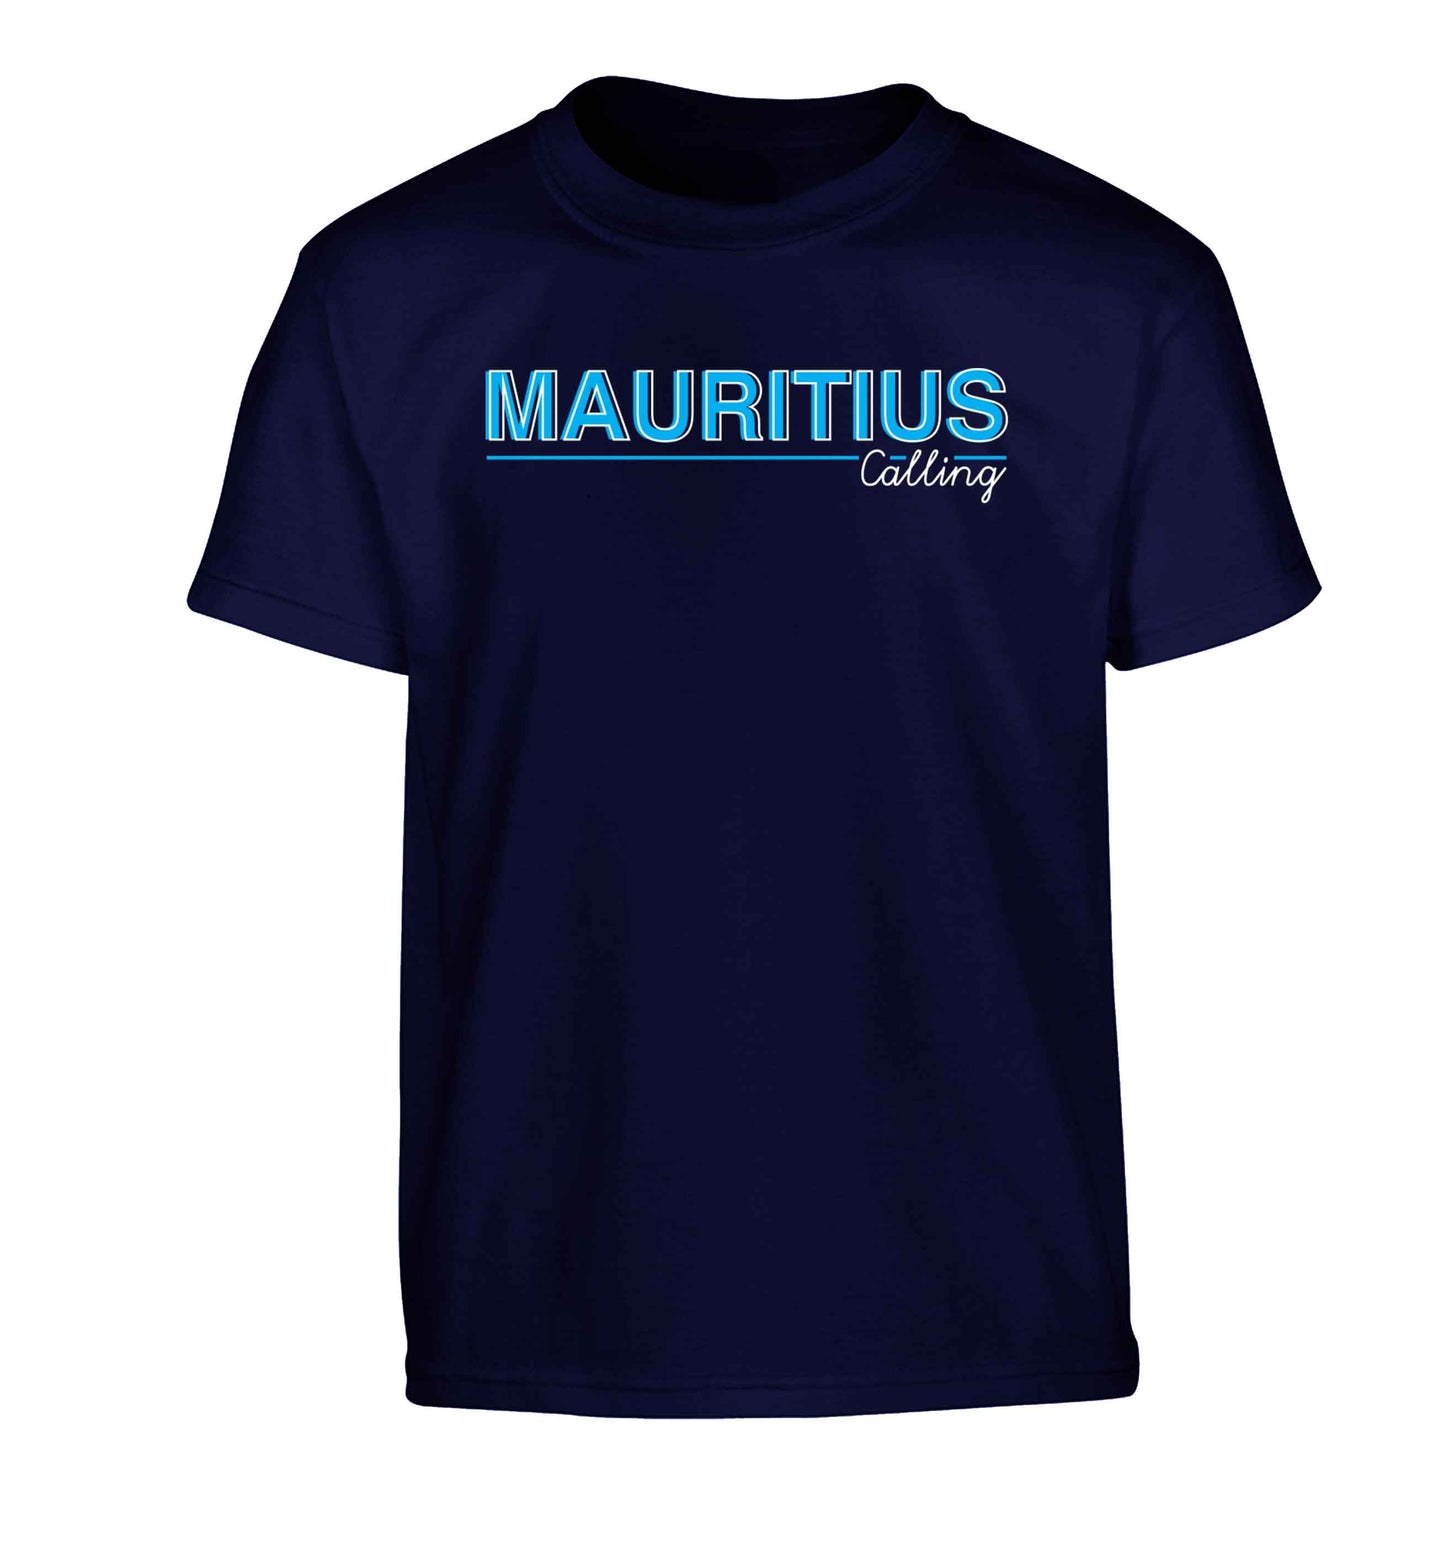 Mauritius calling Children's navy Tshirt 12-13 Years